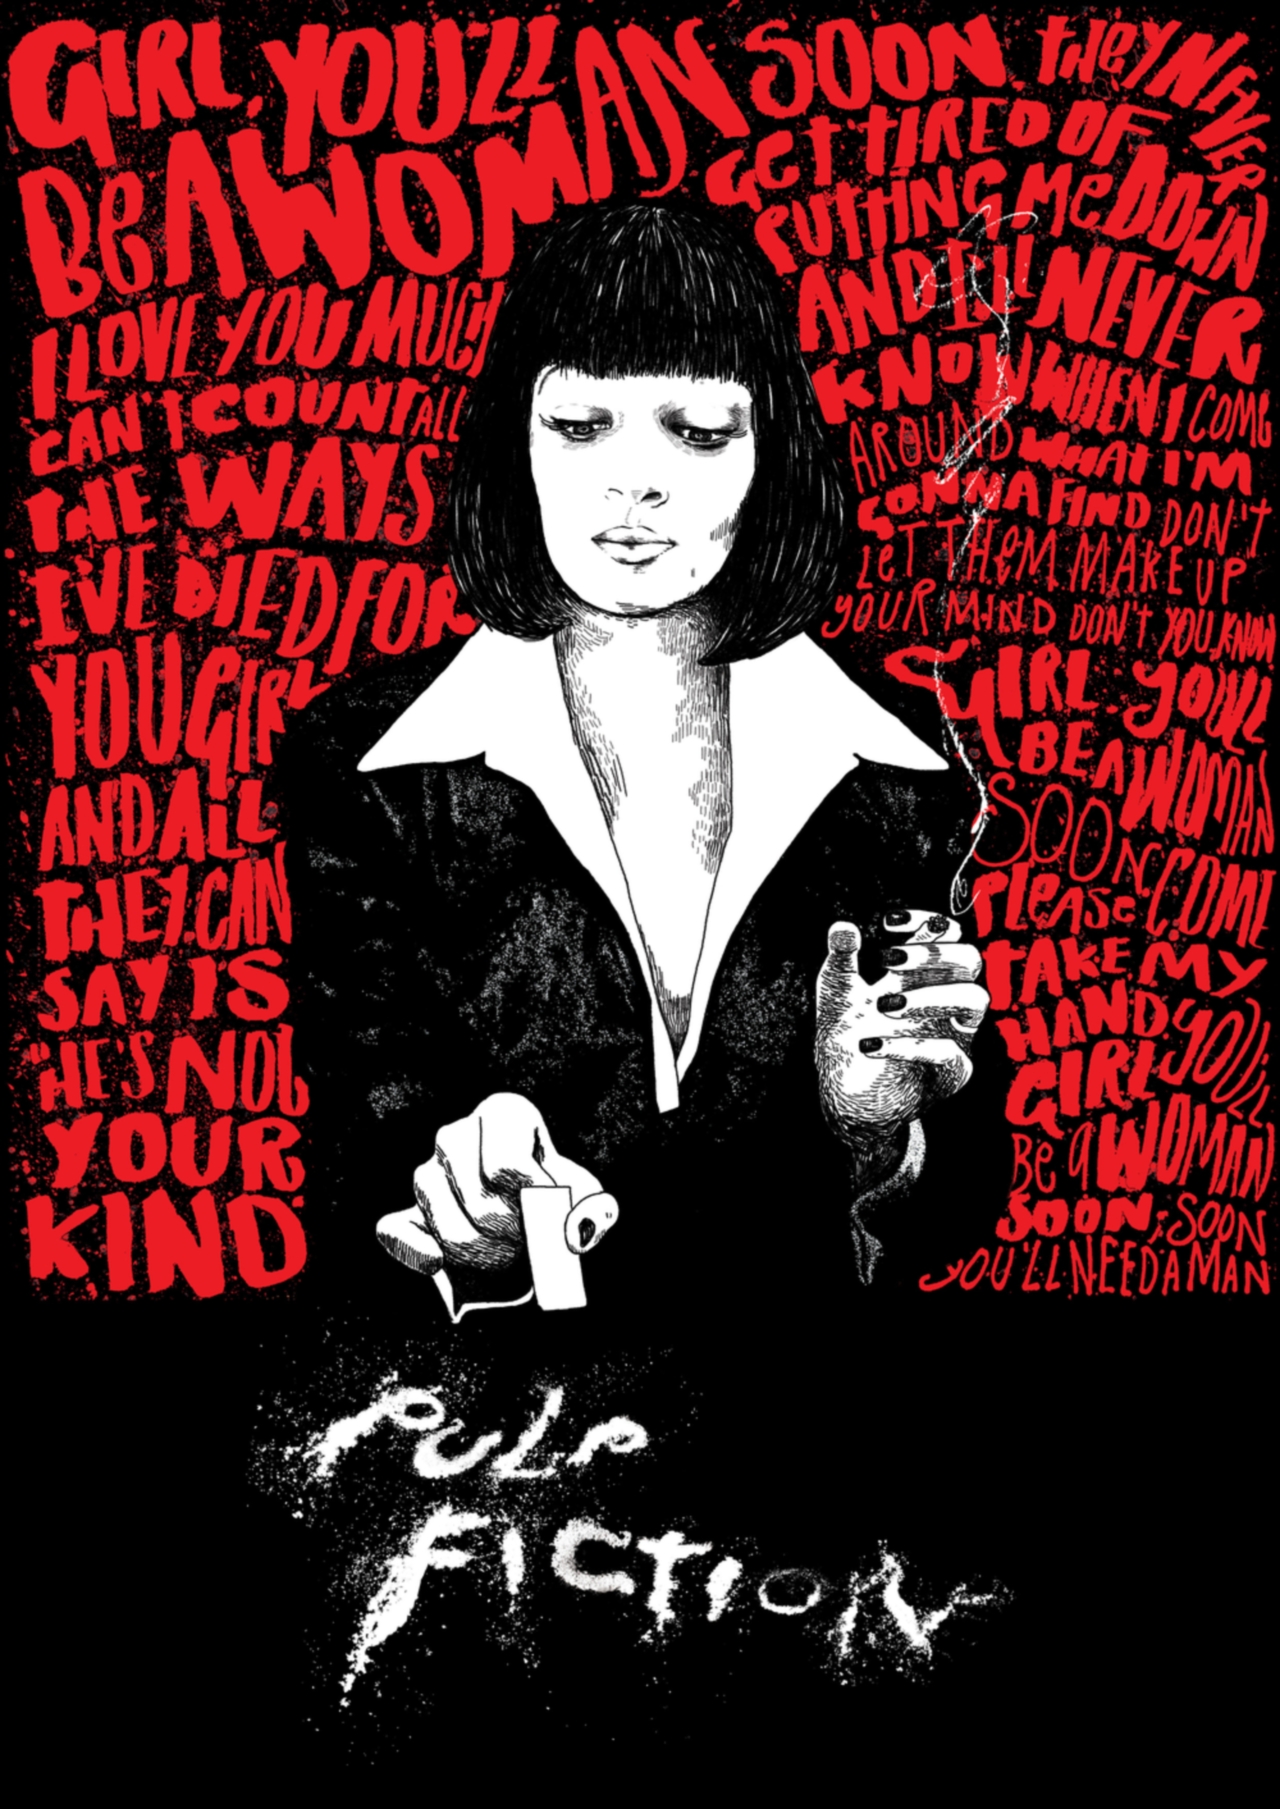 Постеры фильмов Тарантино Pulp Fiction